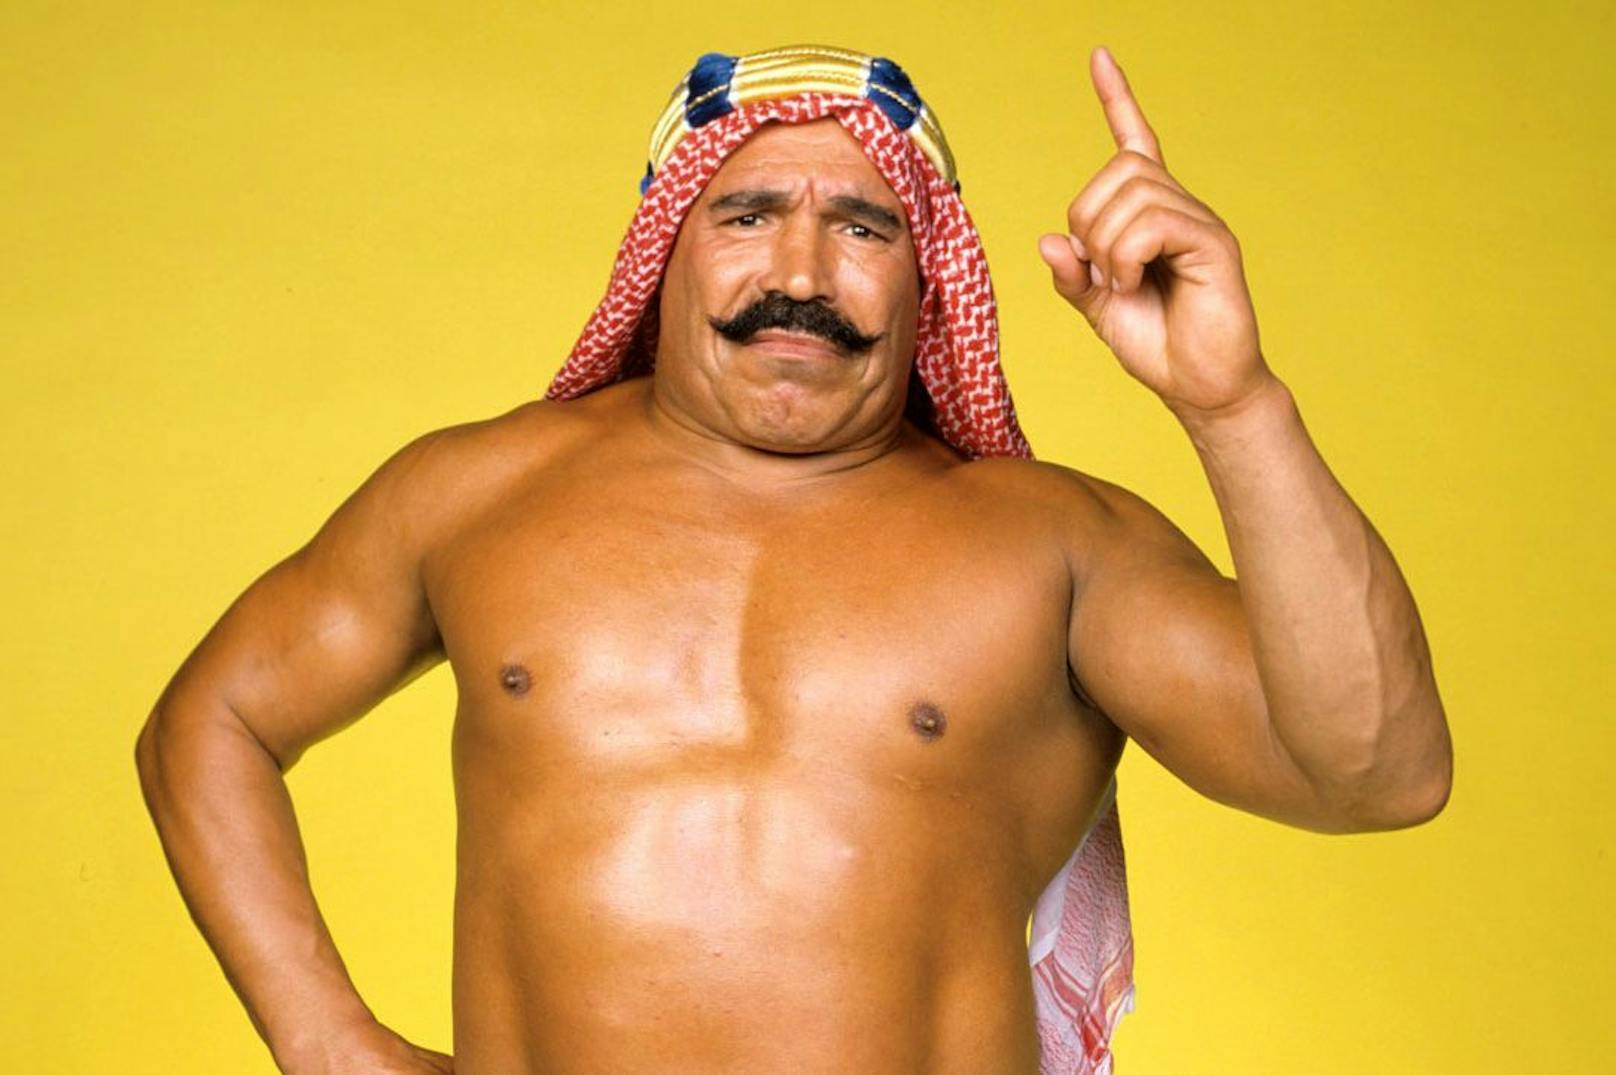 Gegner von Hulk Hogan – WWE-Legende Iron Sheik (81) tot